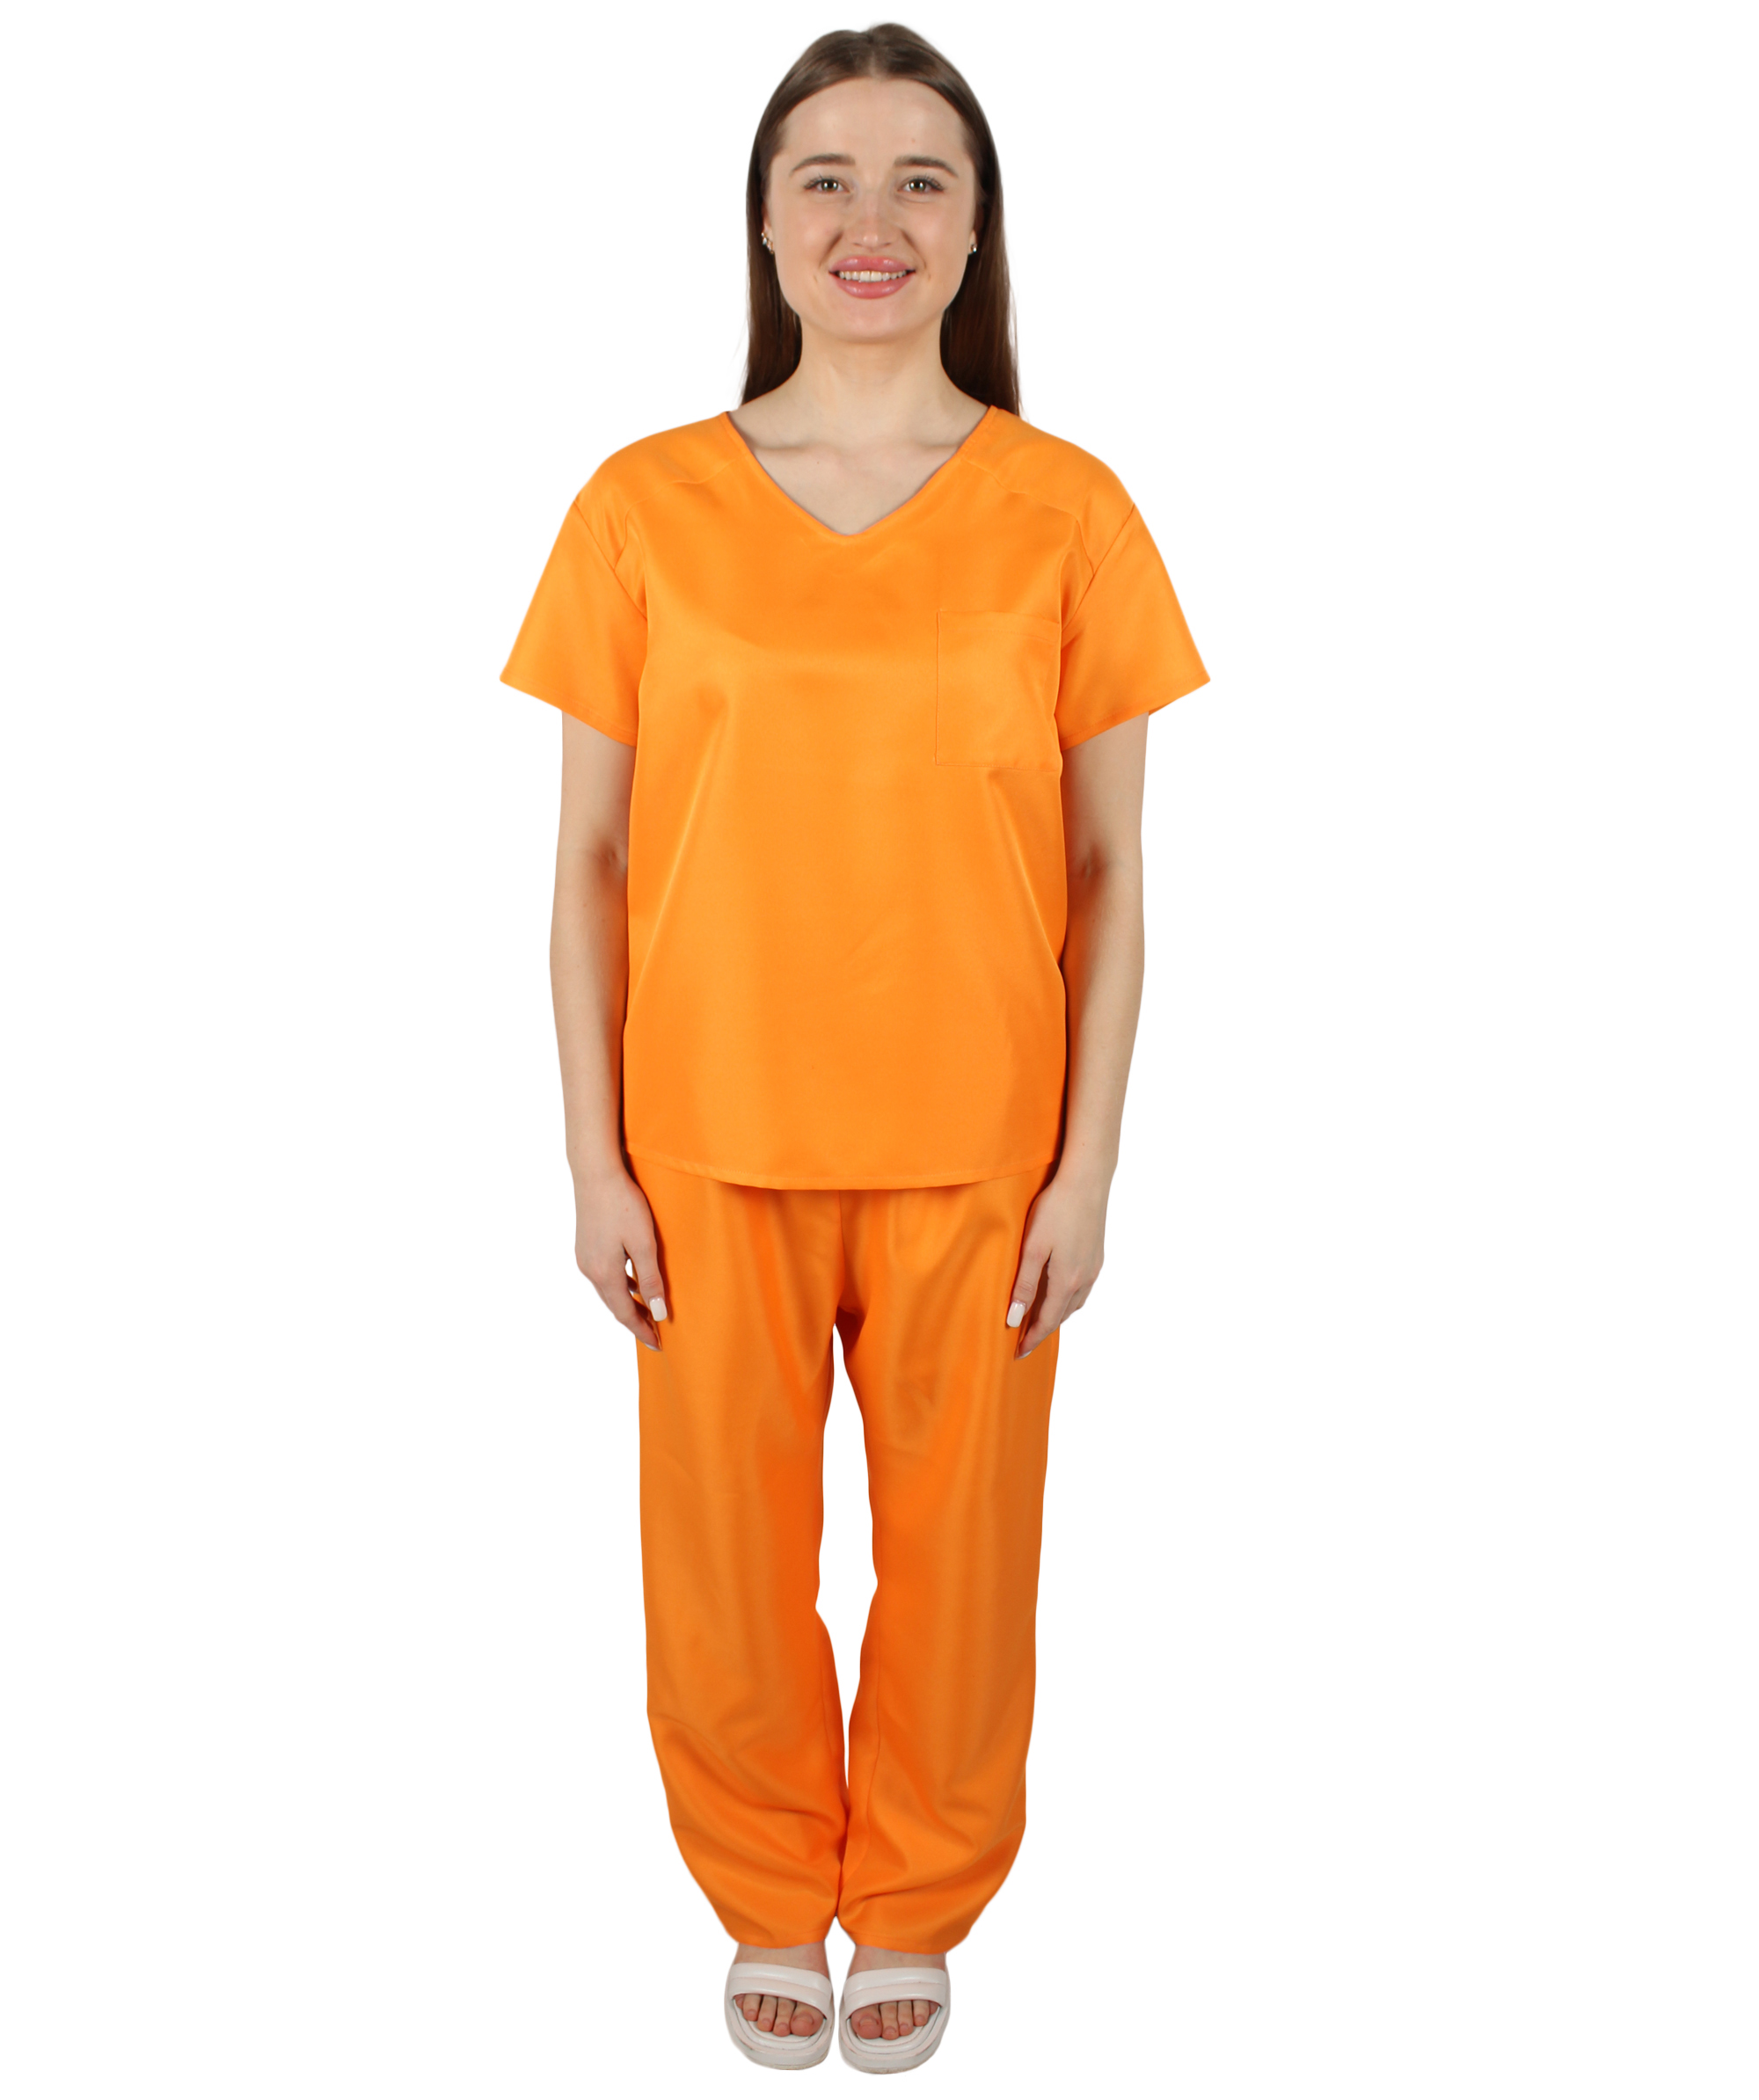 大人用ウィメンズ JCO-277 囚人の制服コスチューム オレンジのコスプレコスチューム